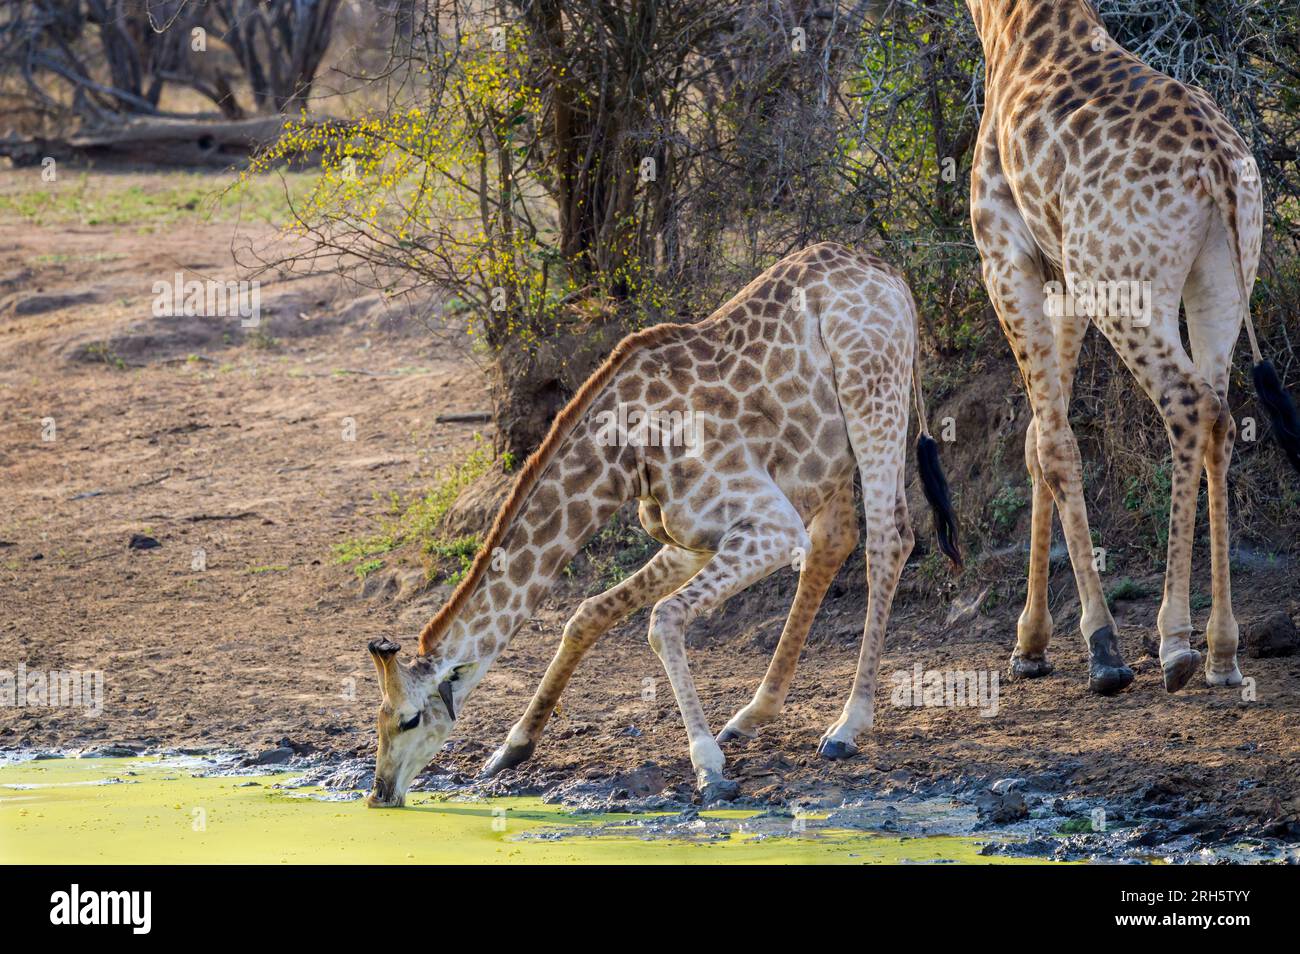 Girafe (Giraffa camelopardalis) se penchant pour boire dans un point d'eau, parc national Kruger, Afrique du Sud. Banque D'Images